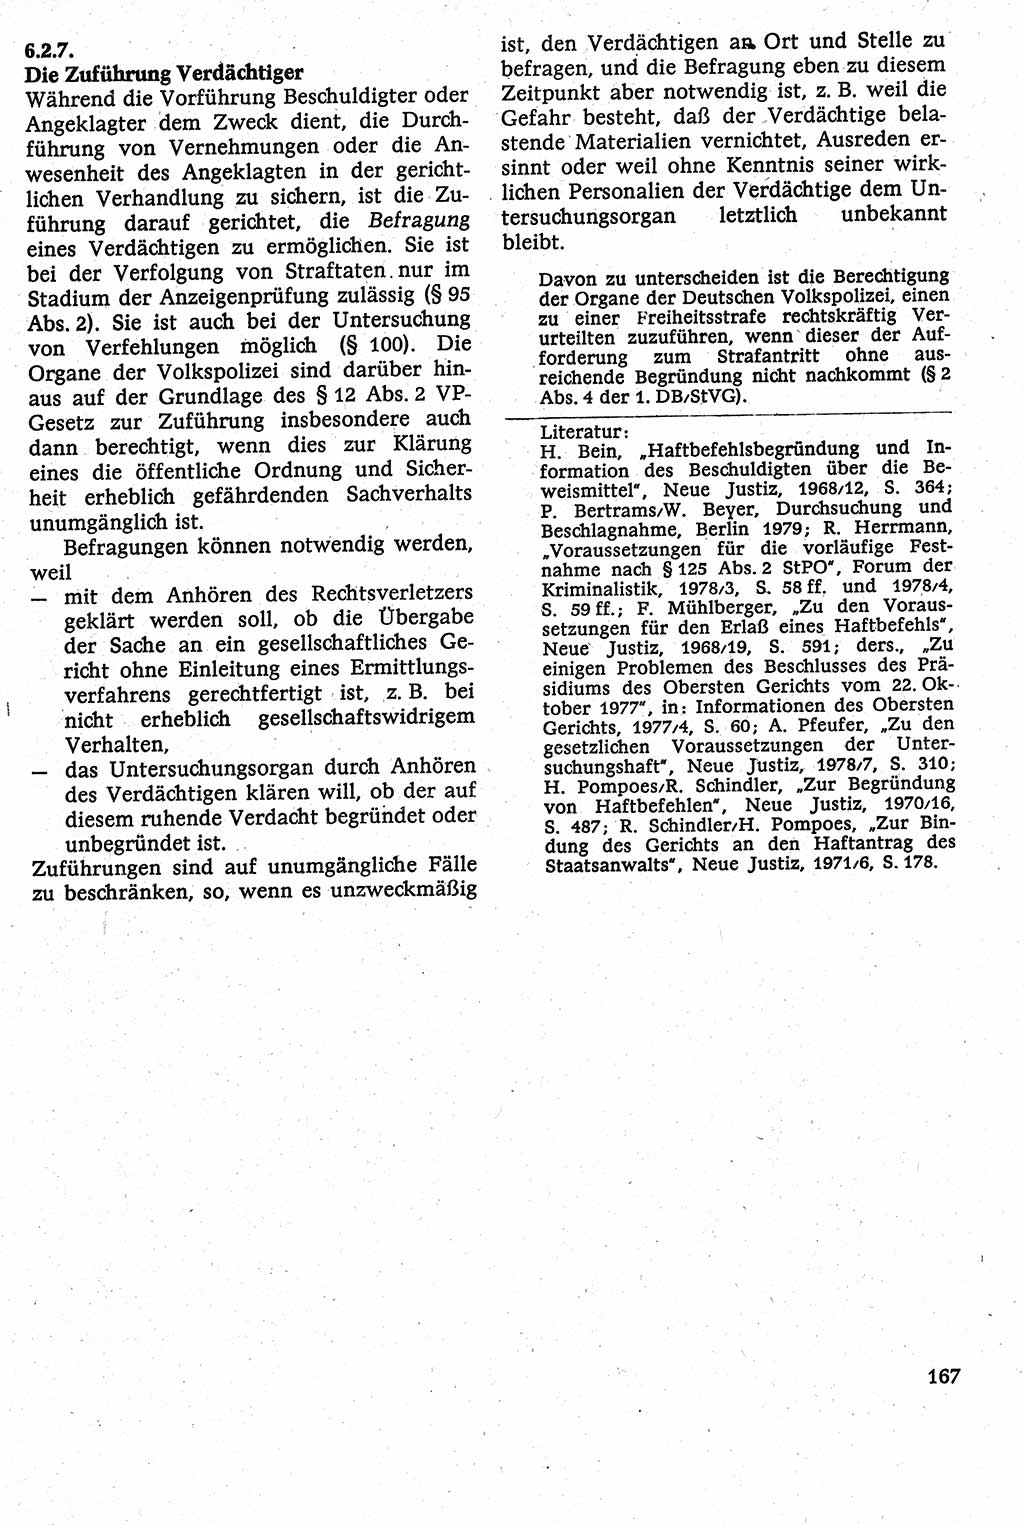 Strafverfahrensrecht [Deutsche Demokratische Republik (DDR)], Lehrbuch 1982, Seite 167 (Strafverf.-R. DDR Lb. 1982, S. 167)